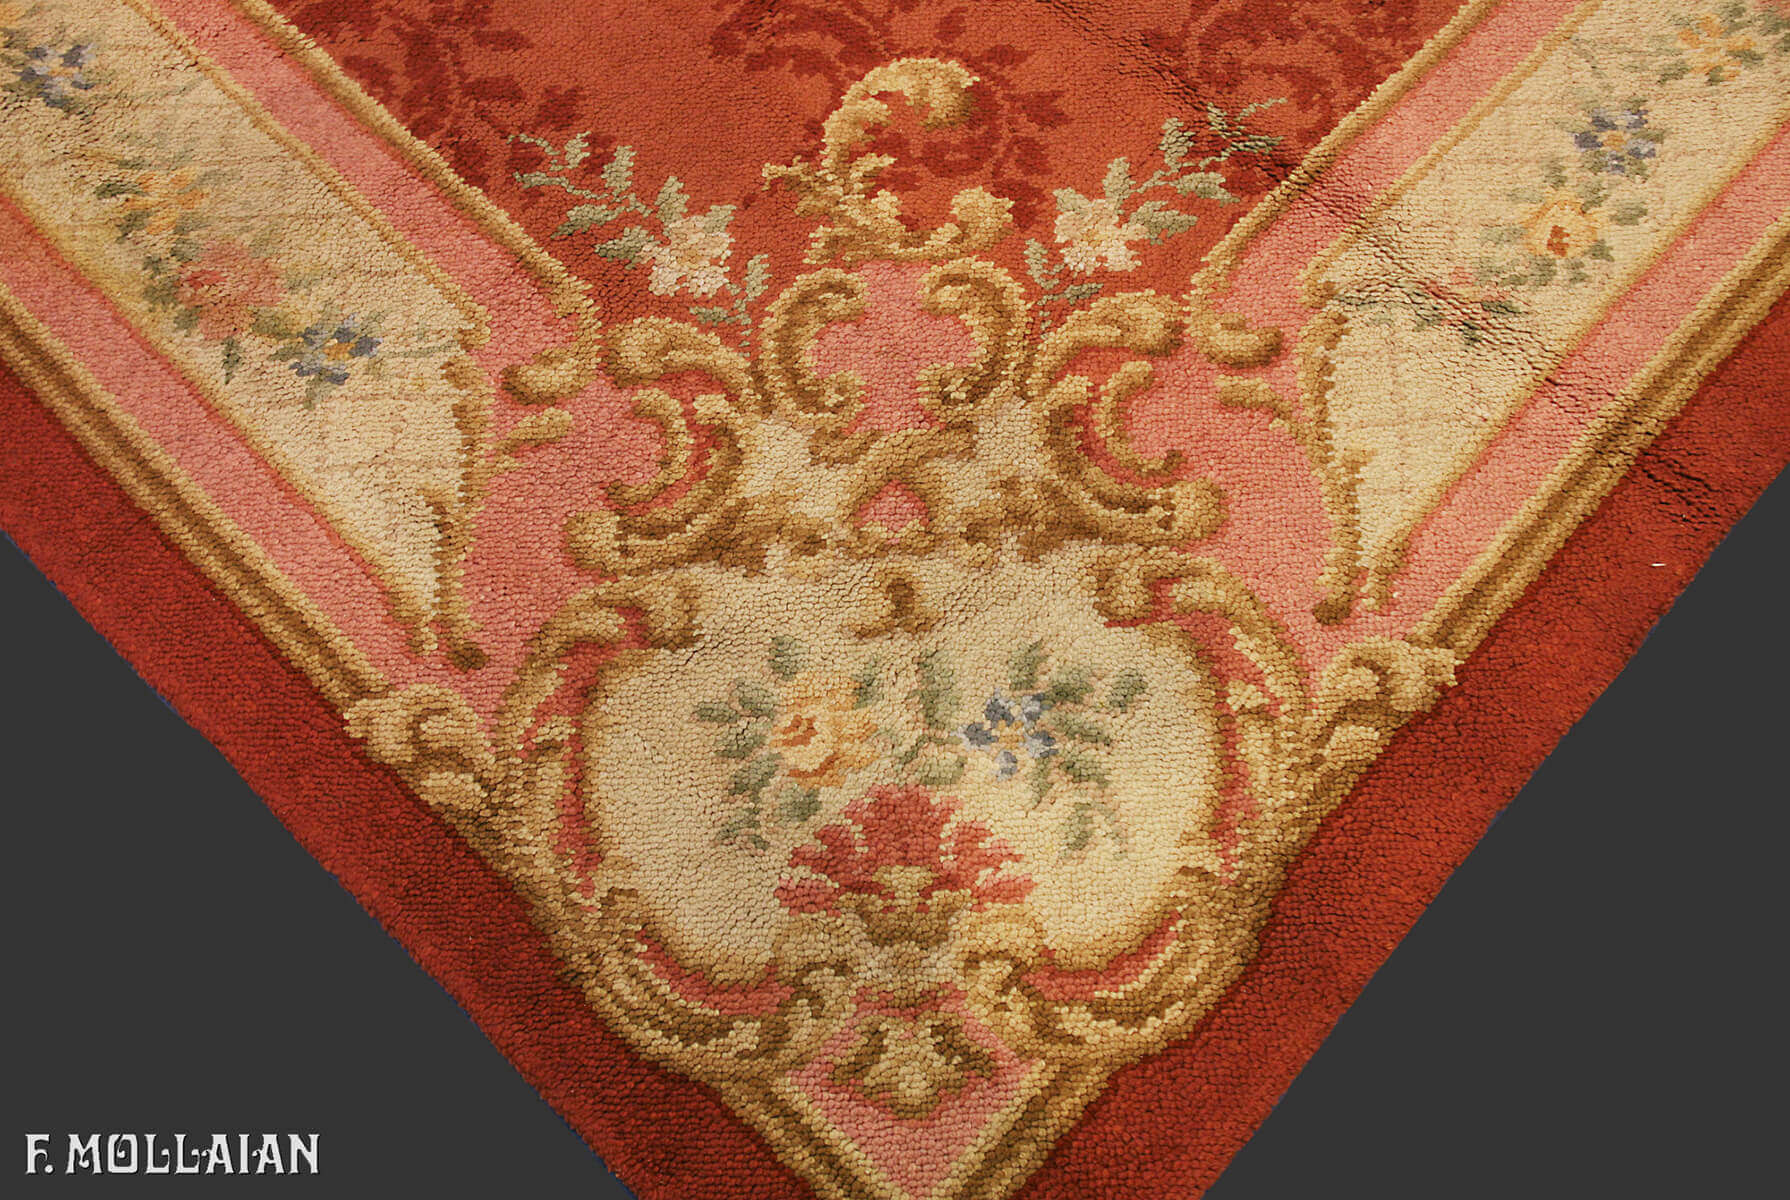 Antique European (Holland) Carpet n°:11640364